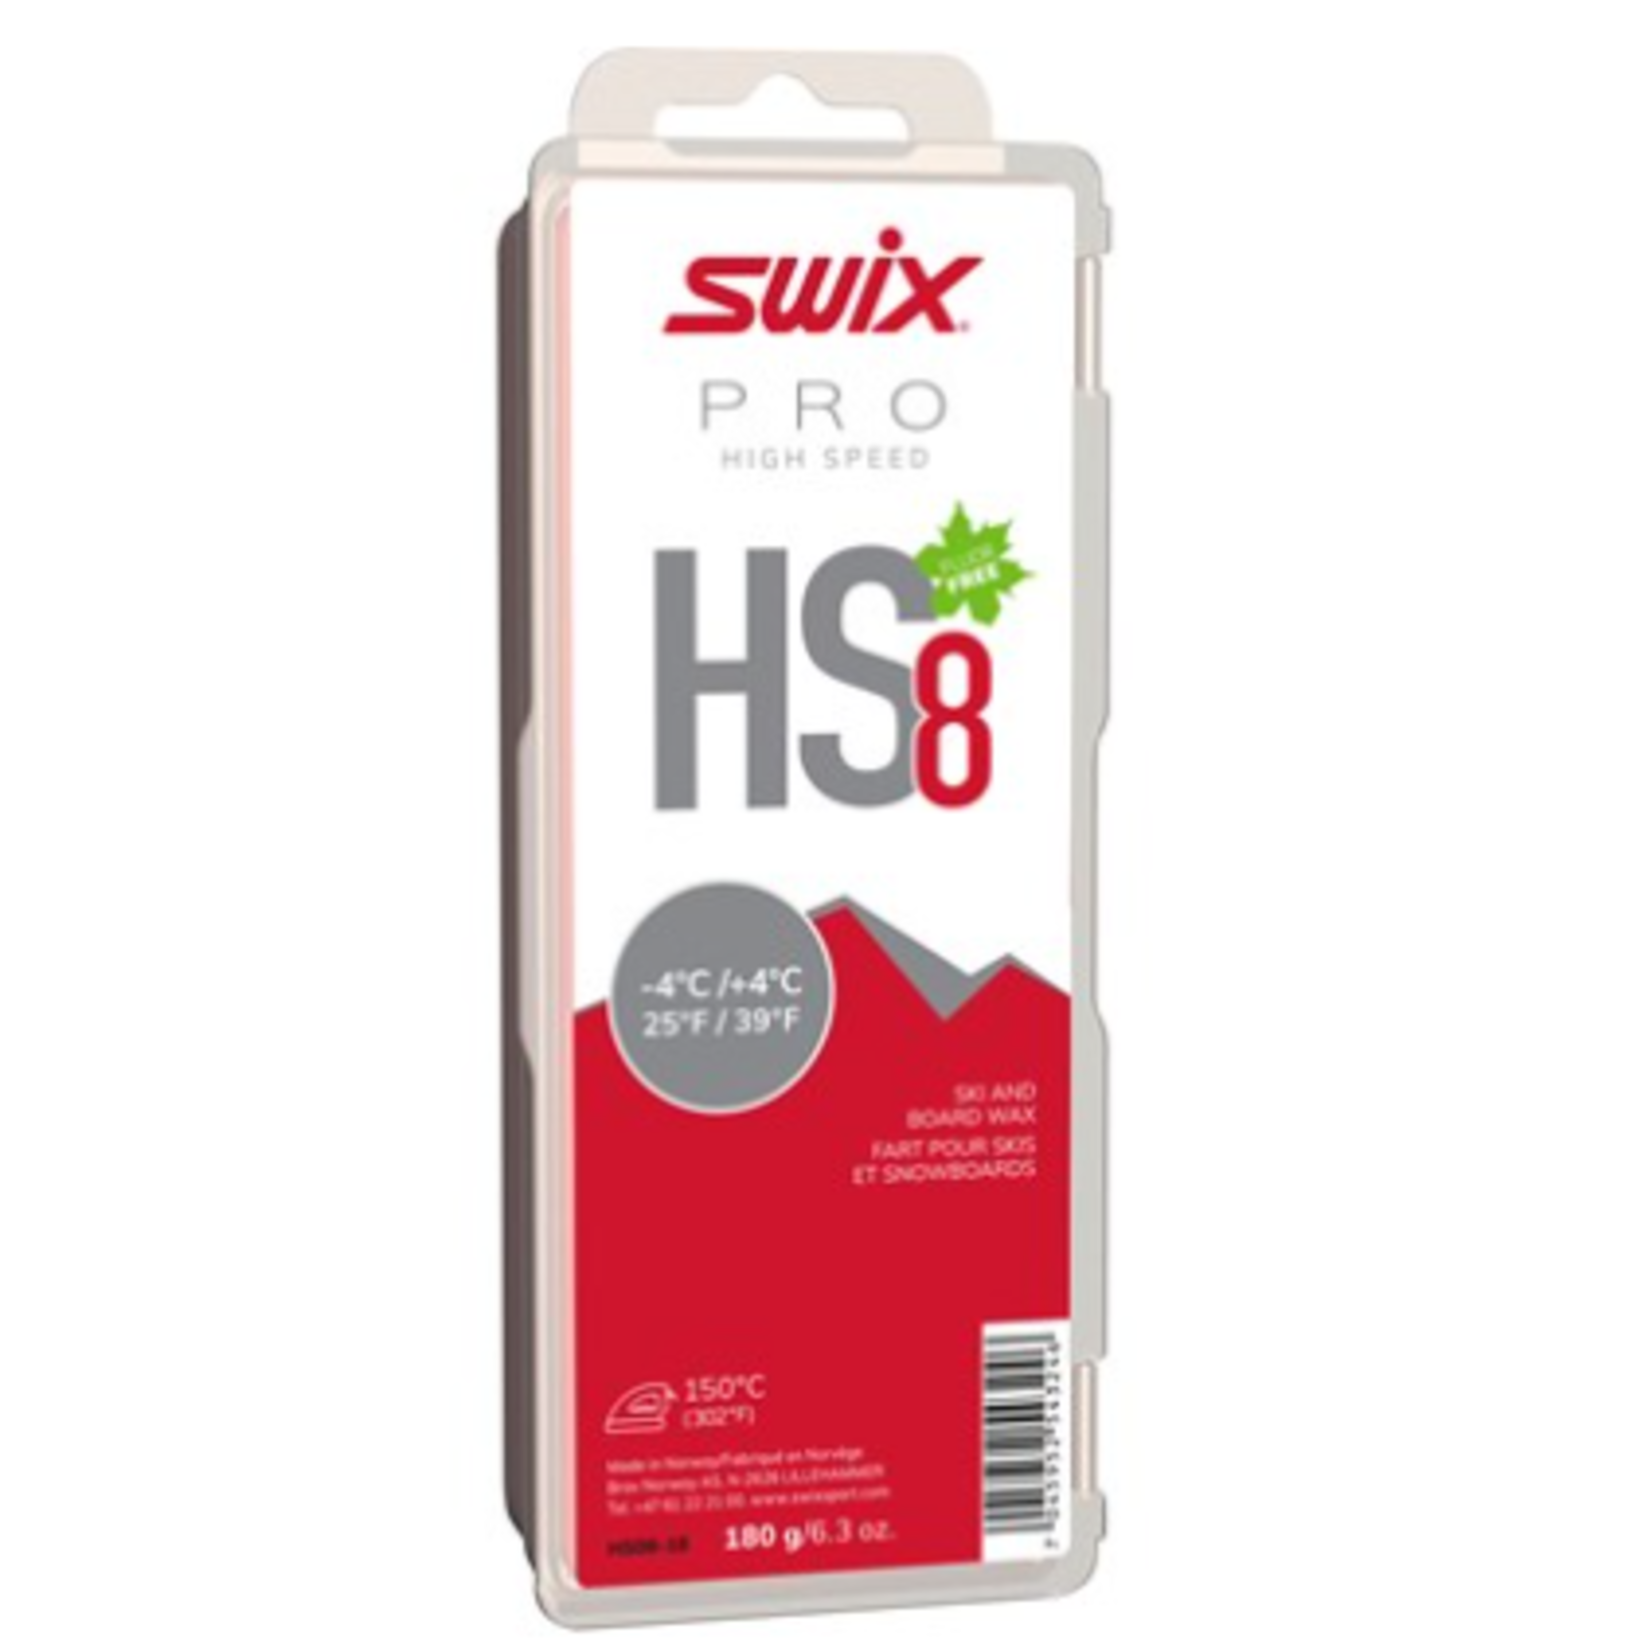 Swix Swix HS8 Red, -4°C/+4°C, 180g